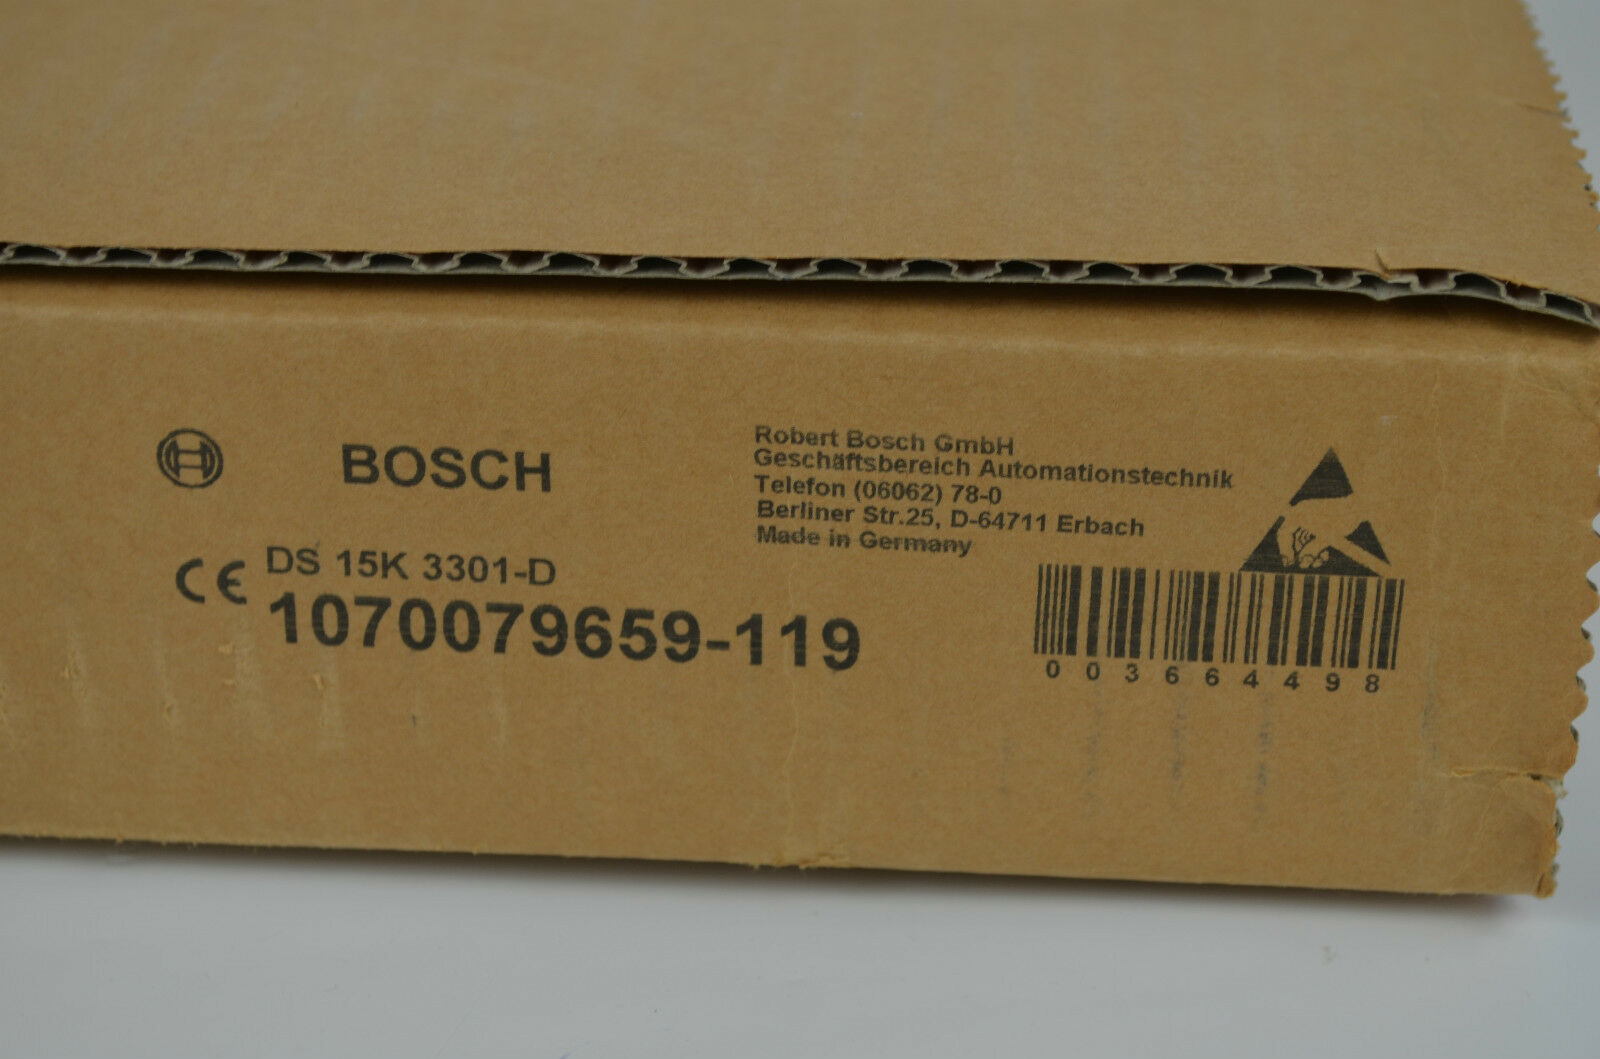 Bosch D8 15K 3301-D